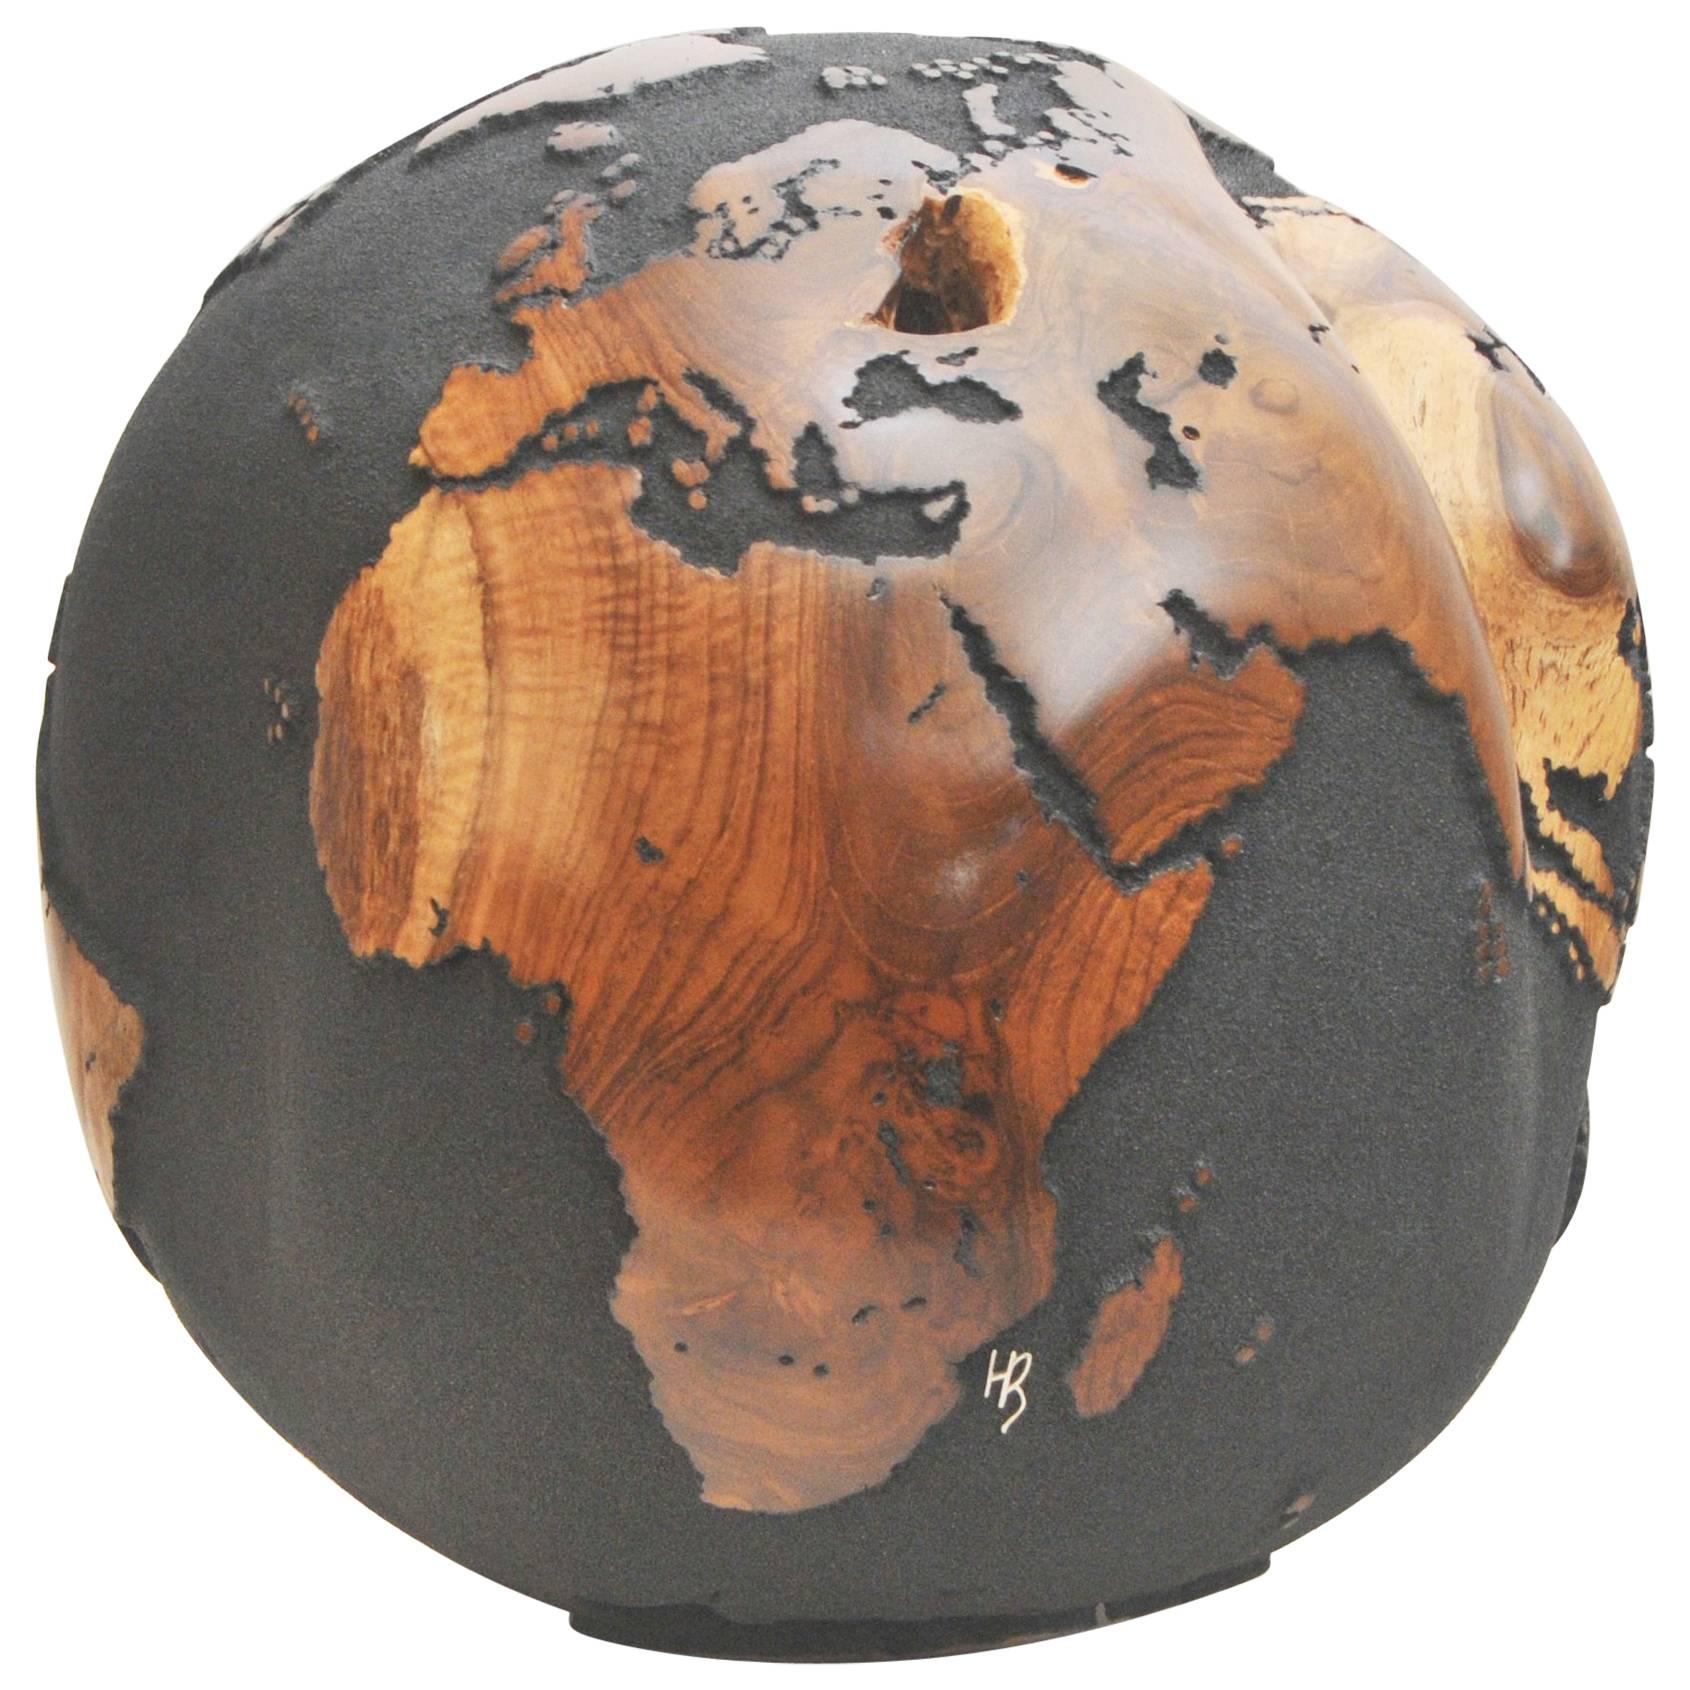 Wooden Globe on a Turning Base Black Finish